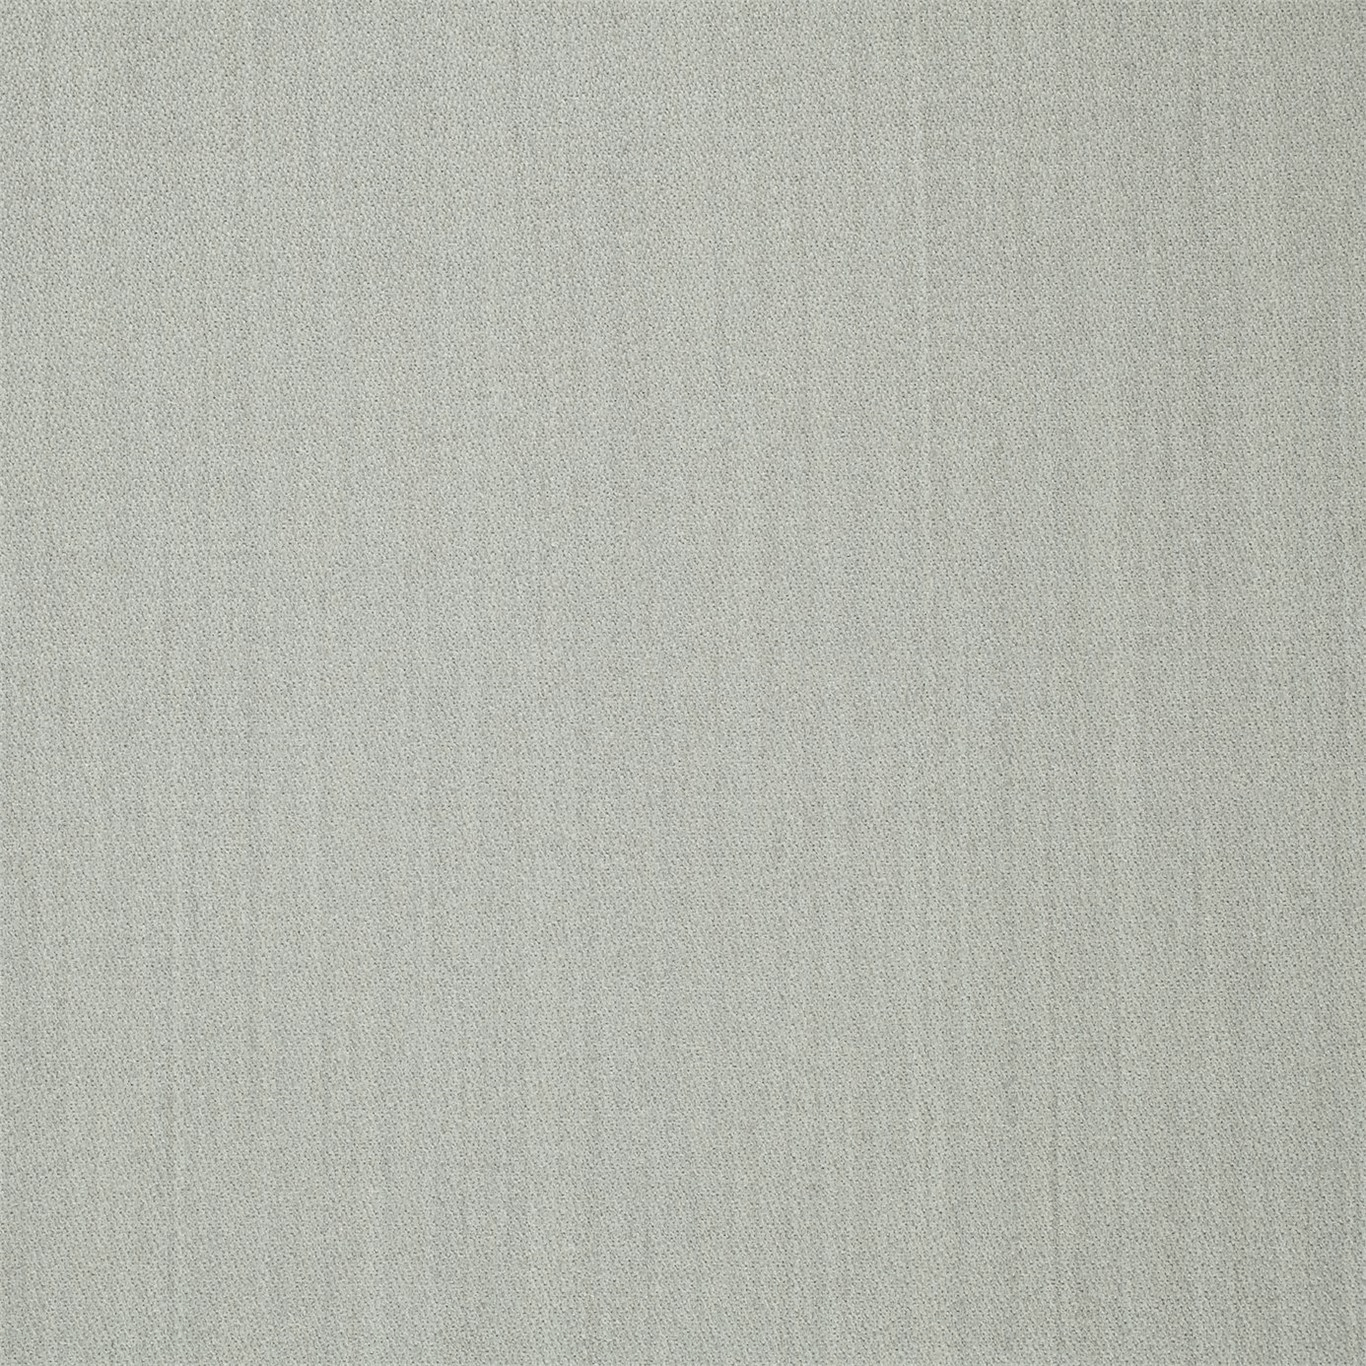 Rosebery Fabric - Silver - By Zoffany - 330791